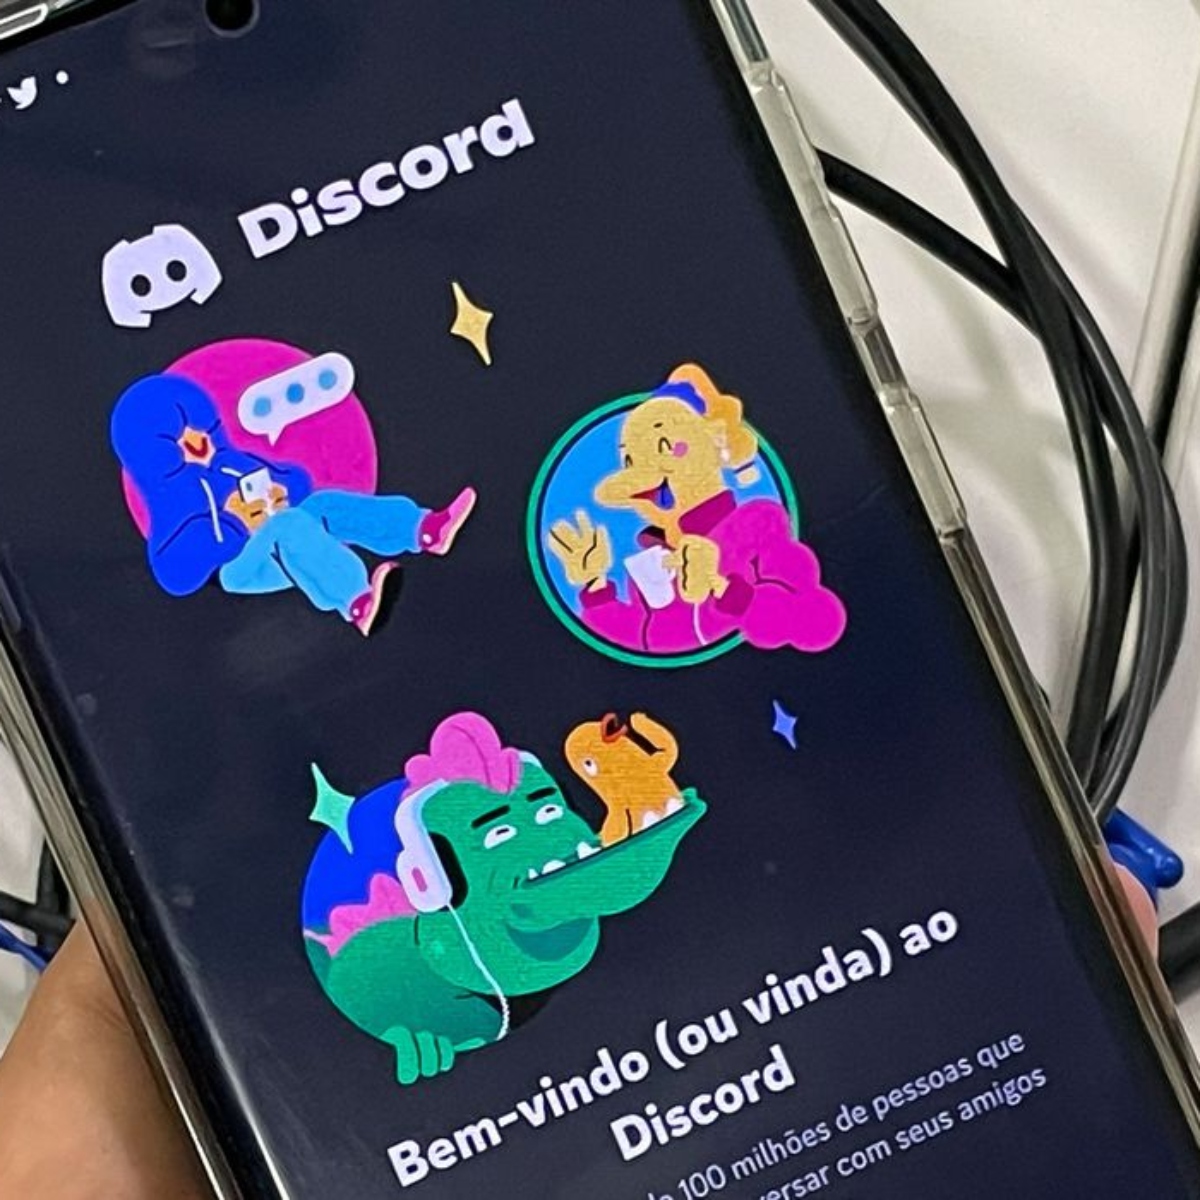  O aplicativo Discord vem sendo alvo de investigações por ter canais com conteúdos que fazem apologia ao nazismo, racismo, pedofilia e exploração sexual. 